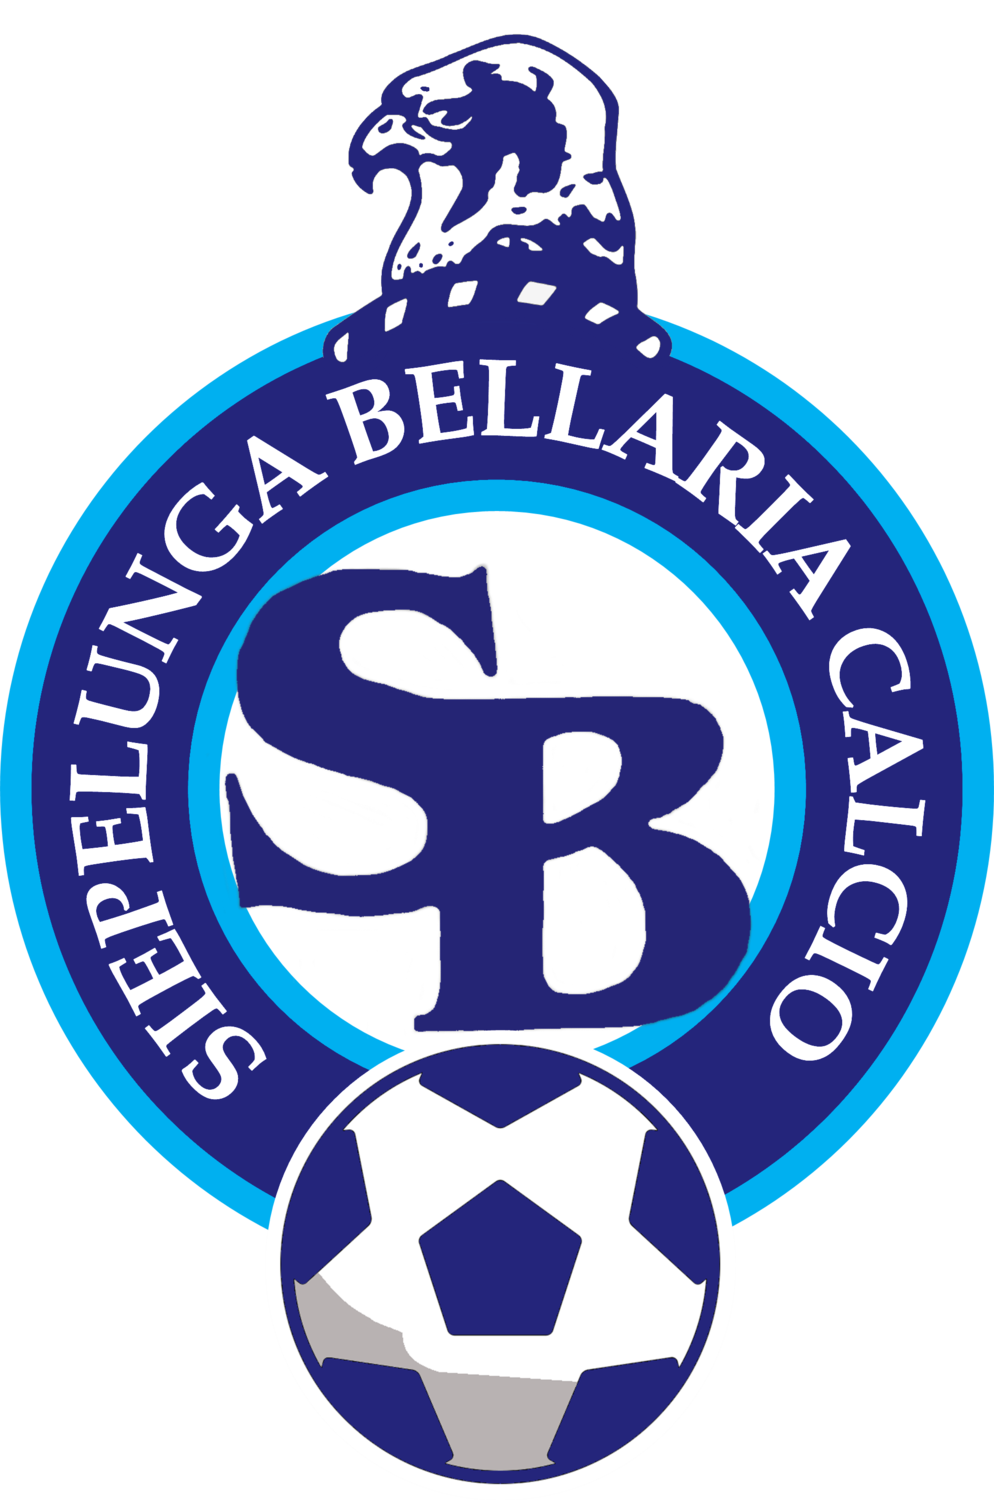 Wappen ASD Siepelunga Bellaria Calcio diverse  106381